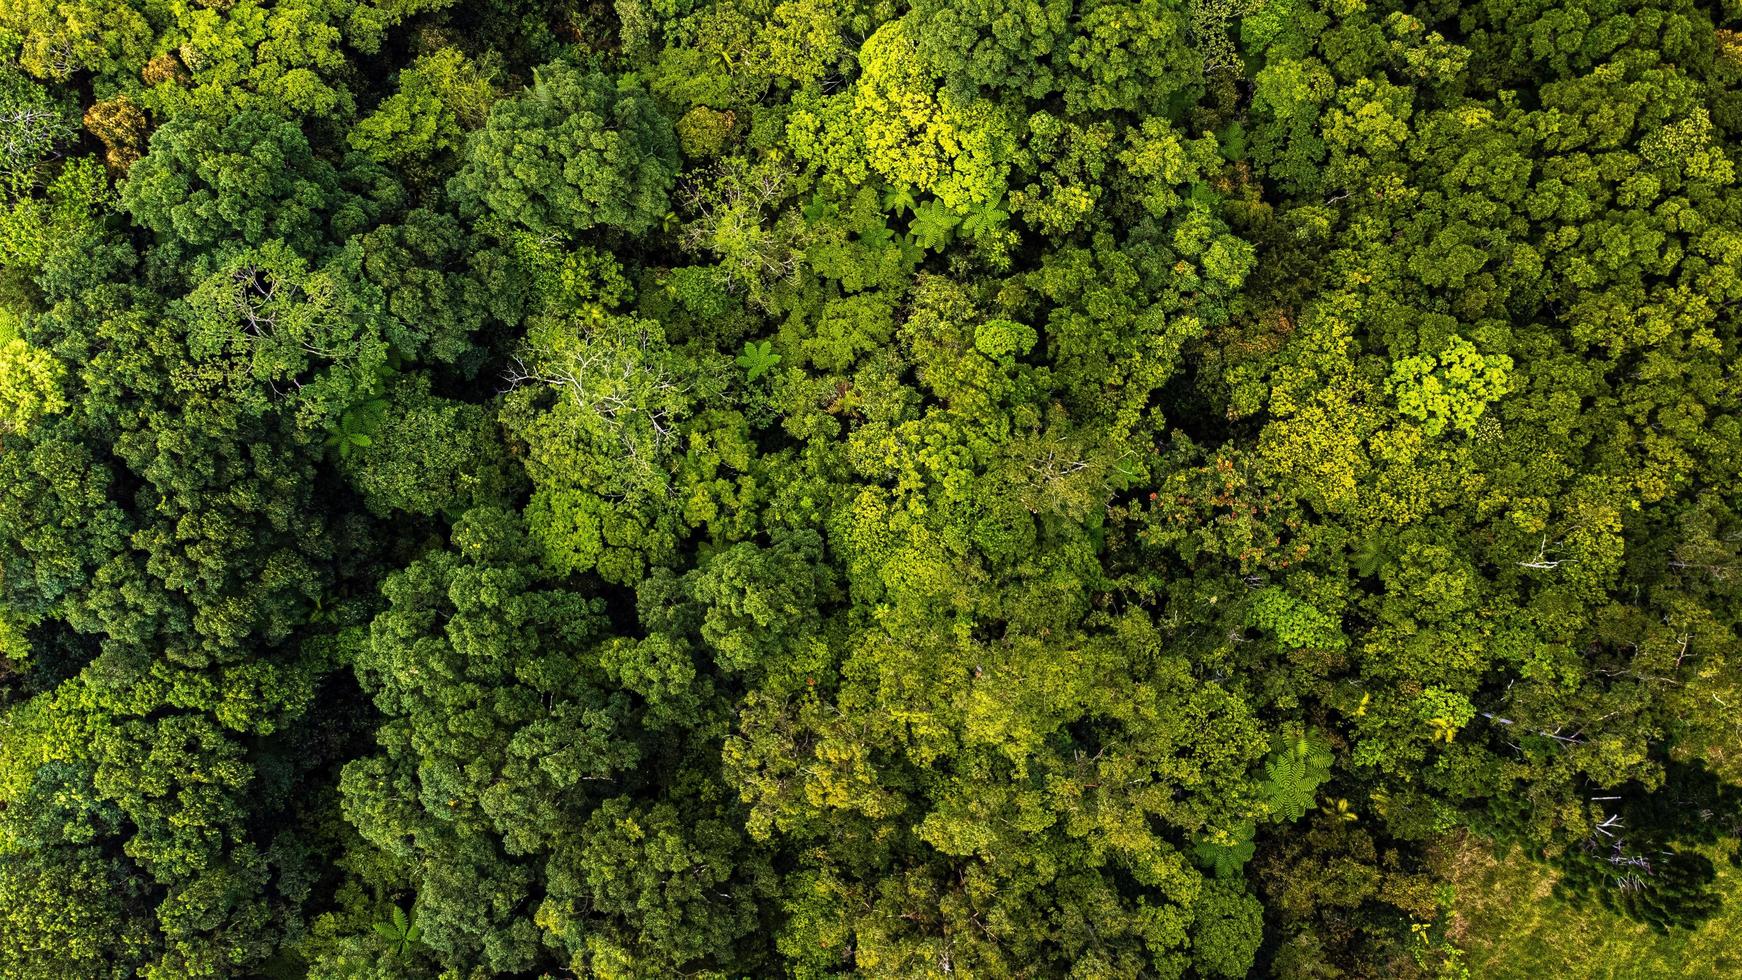 toma aerea de una selva tropical foto